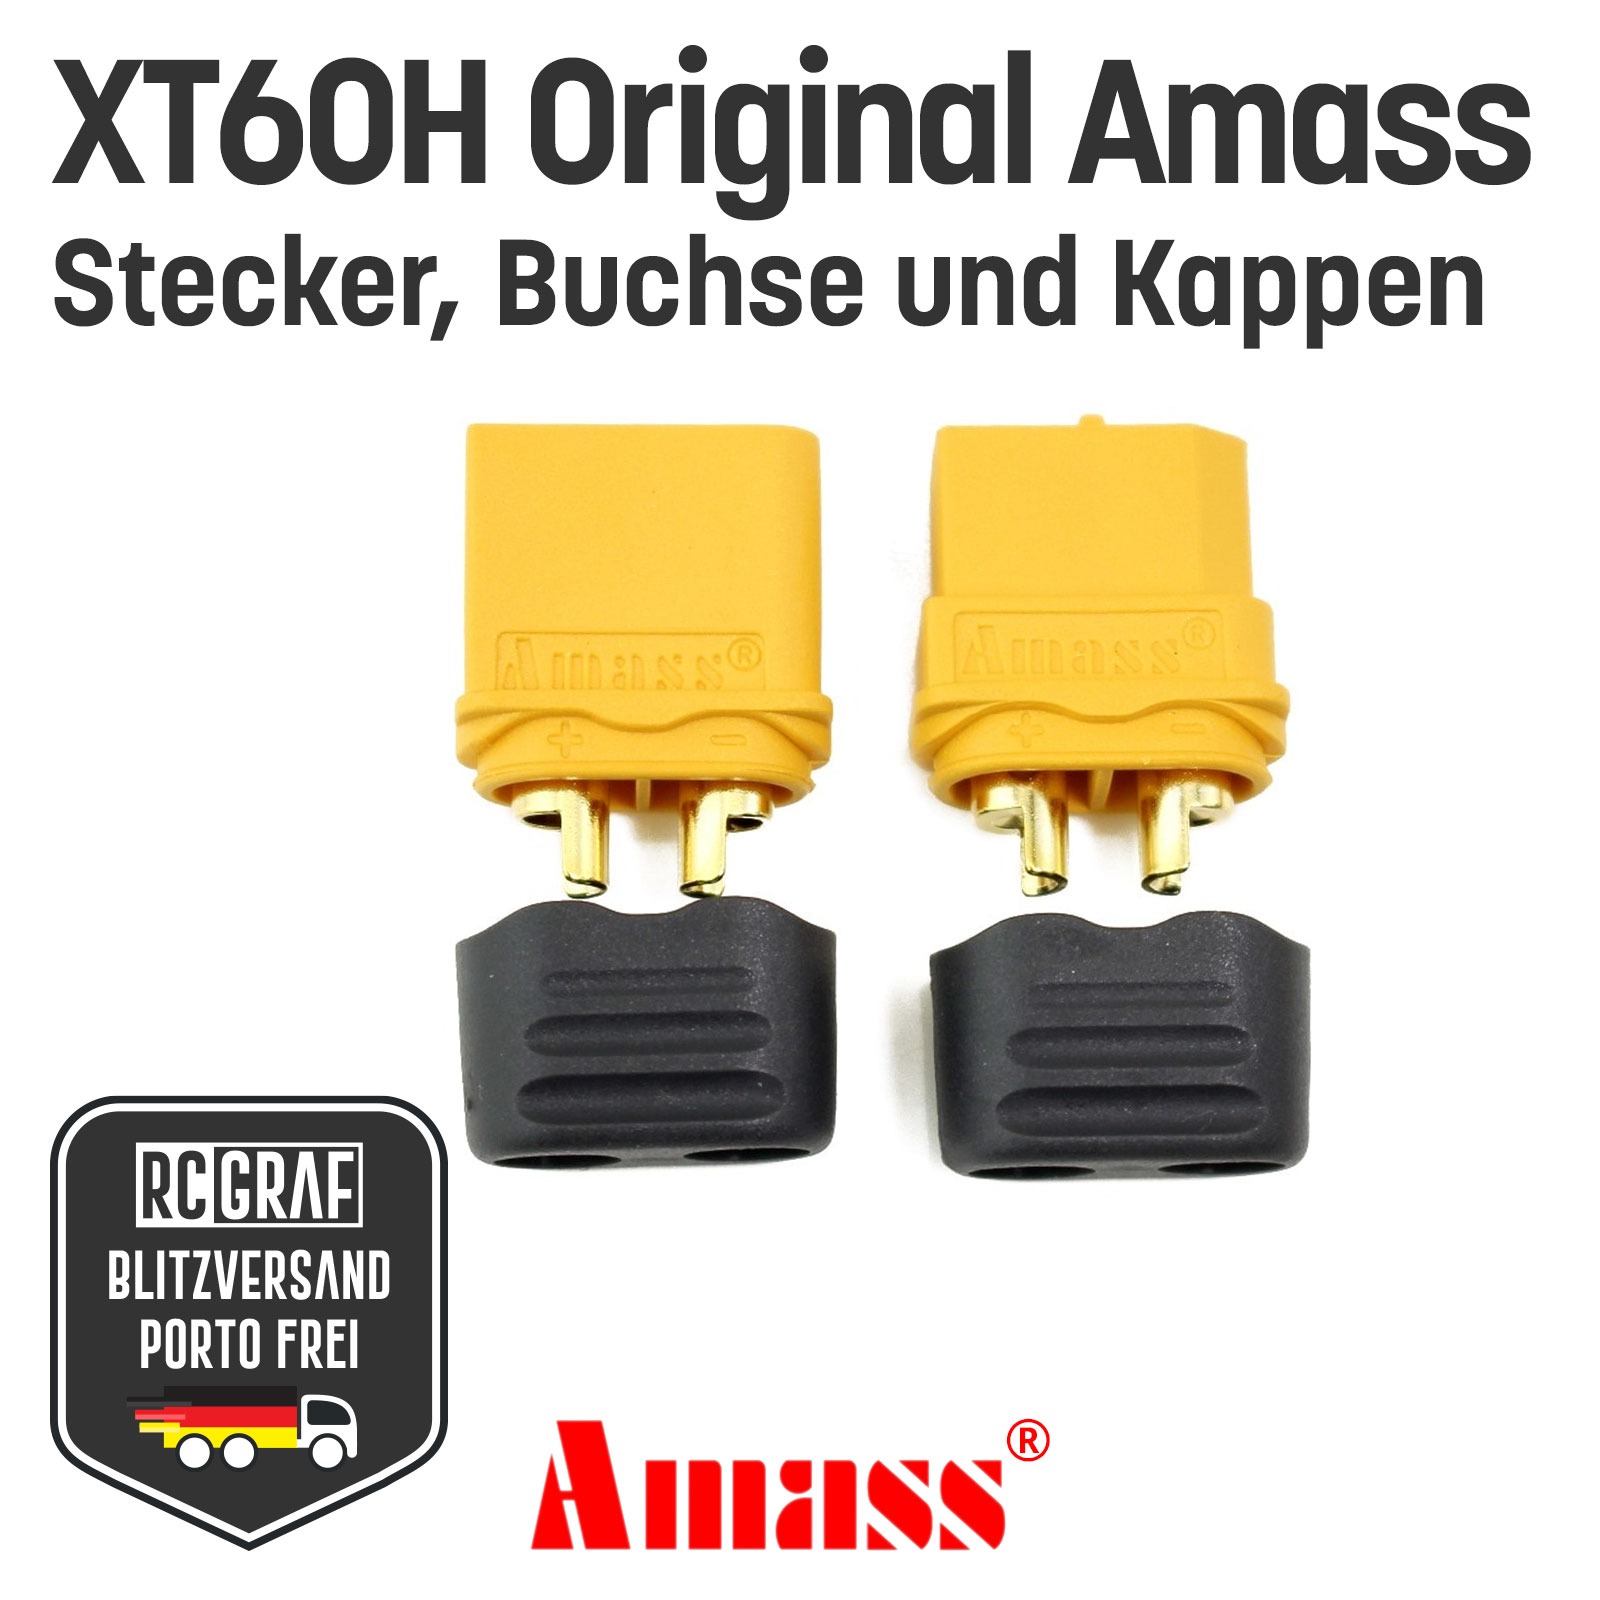 10 Paare XT60H Original Amass XT60 Stecker Buchse Gelb 3